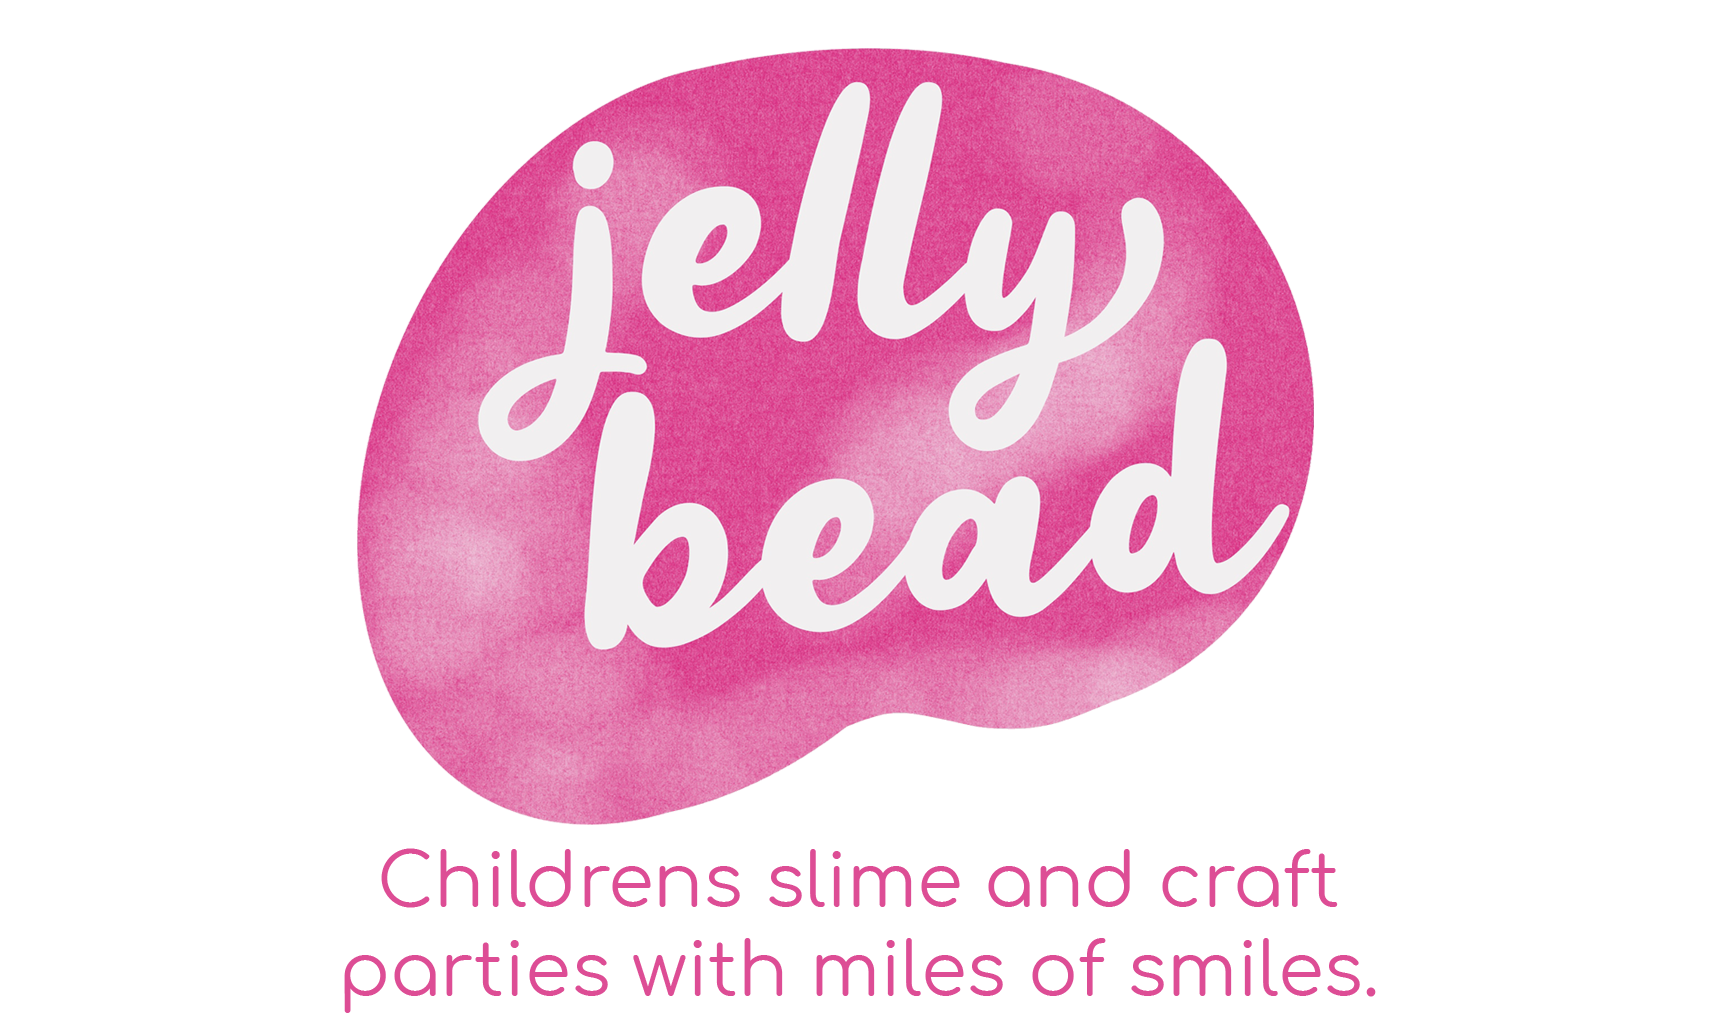 Jelly bead